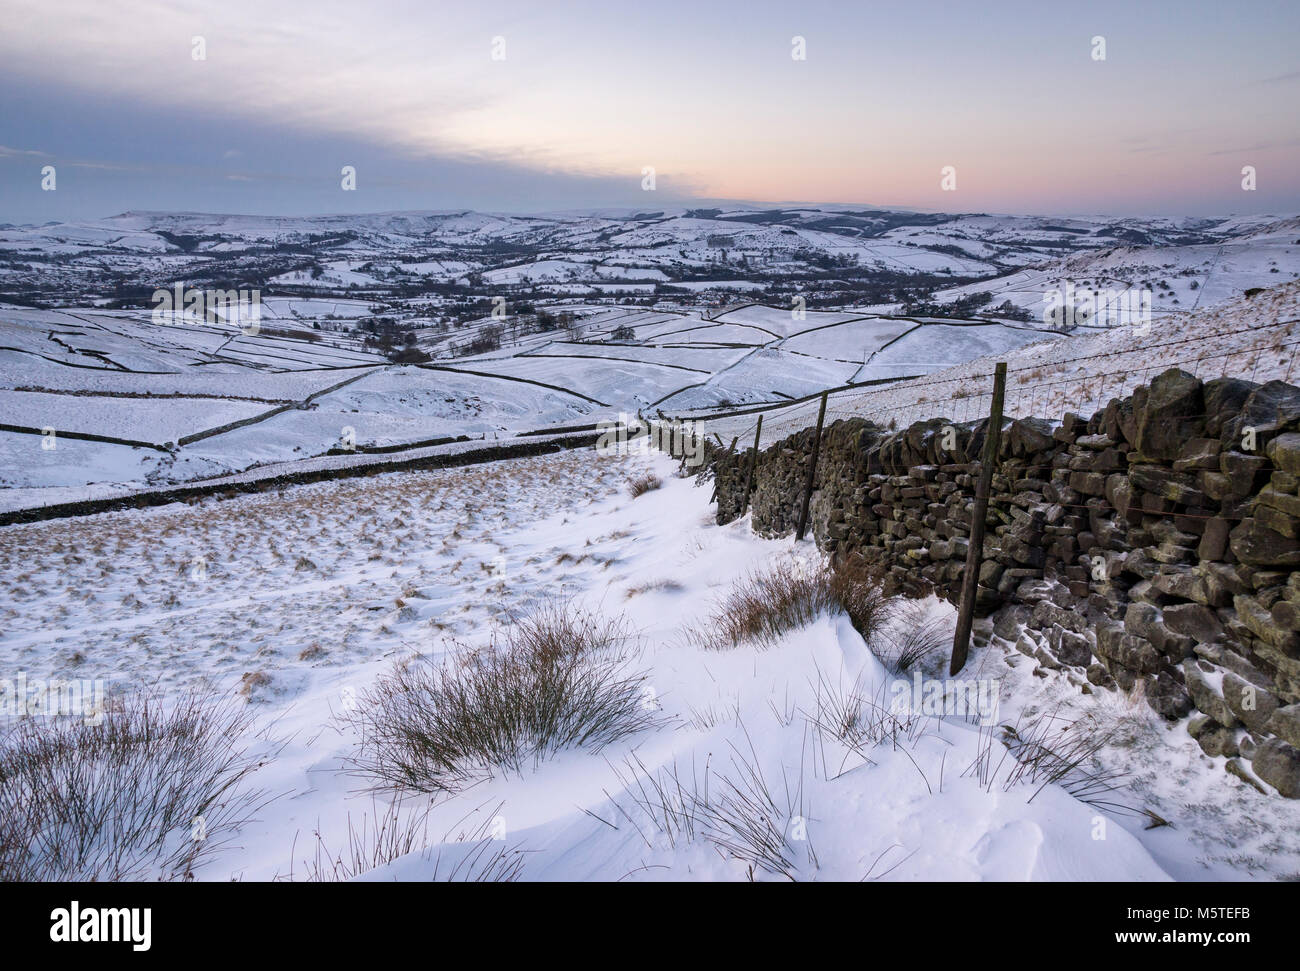 Matin d'hiver enneigé dans les collines du Peak District. Contre un mur de pierres sèches des congères. Vue de Chapelle-en-le-frith dans le Derbyshire, Angleterre. Banque D'Images